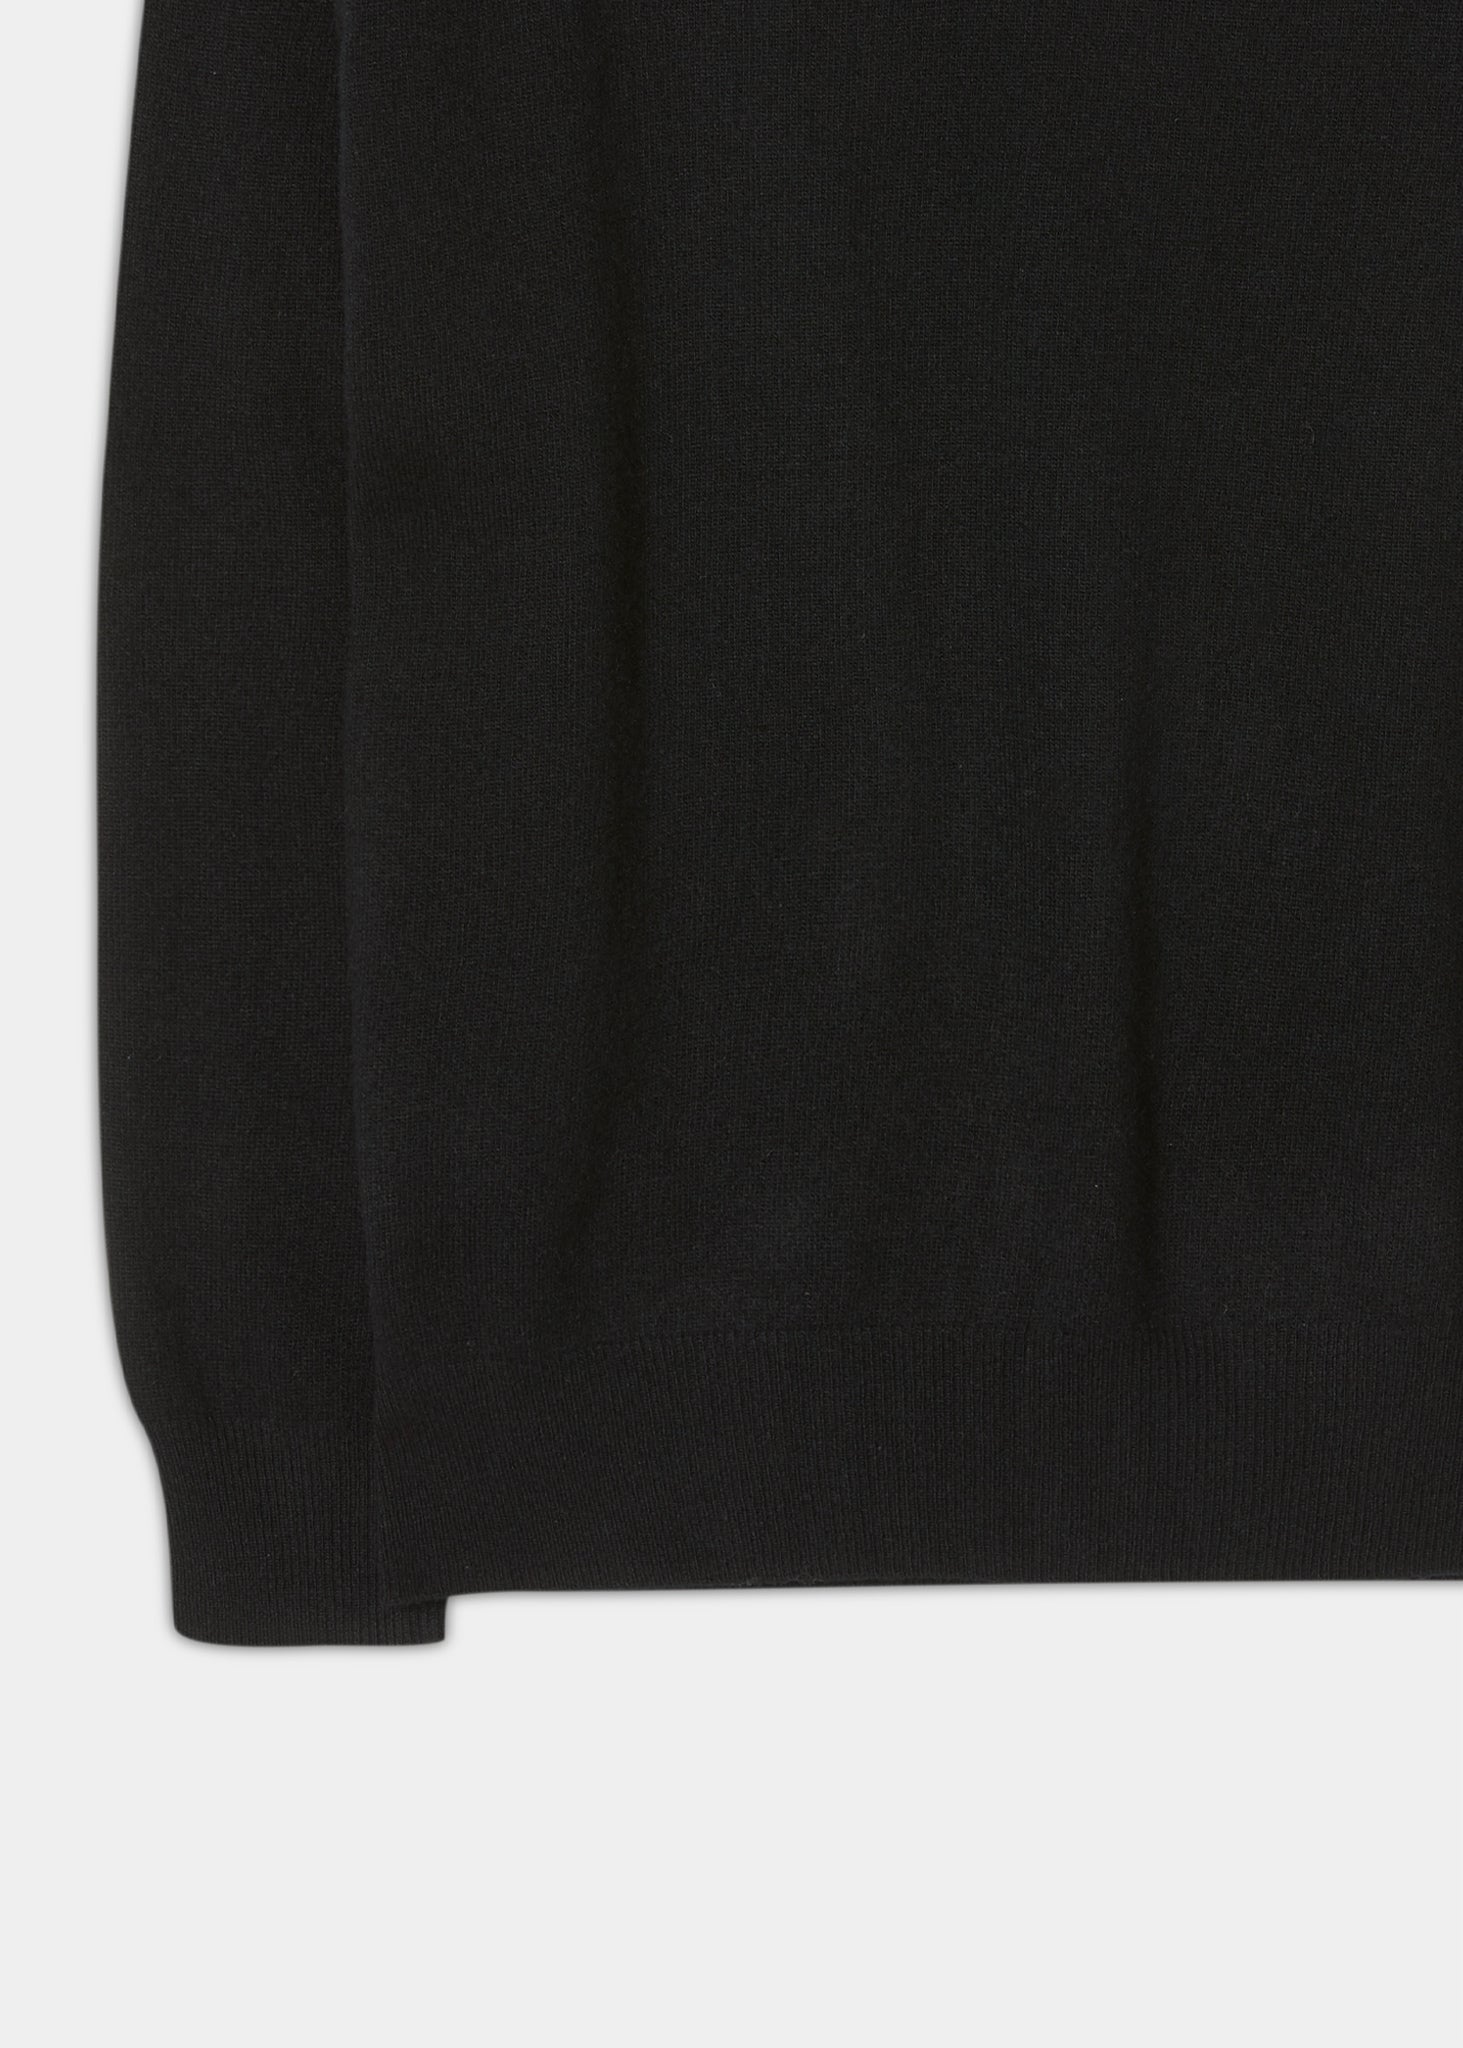 Geelong-Wool-Sweater-Black